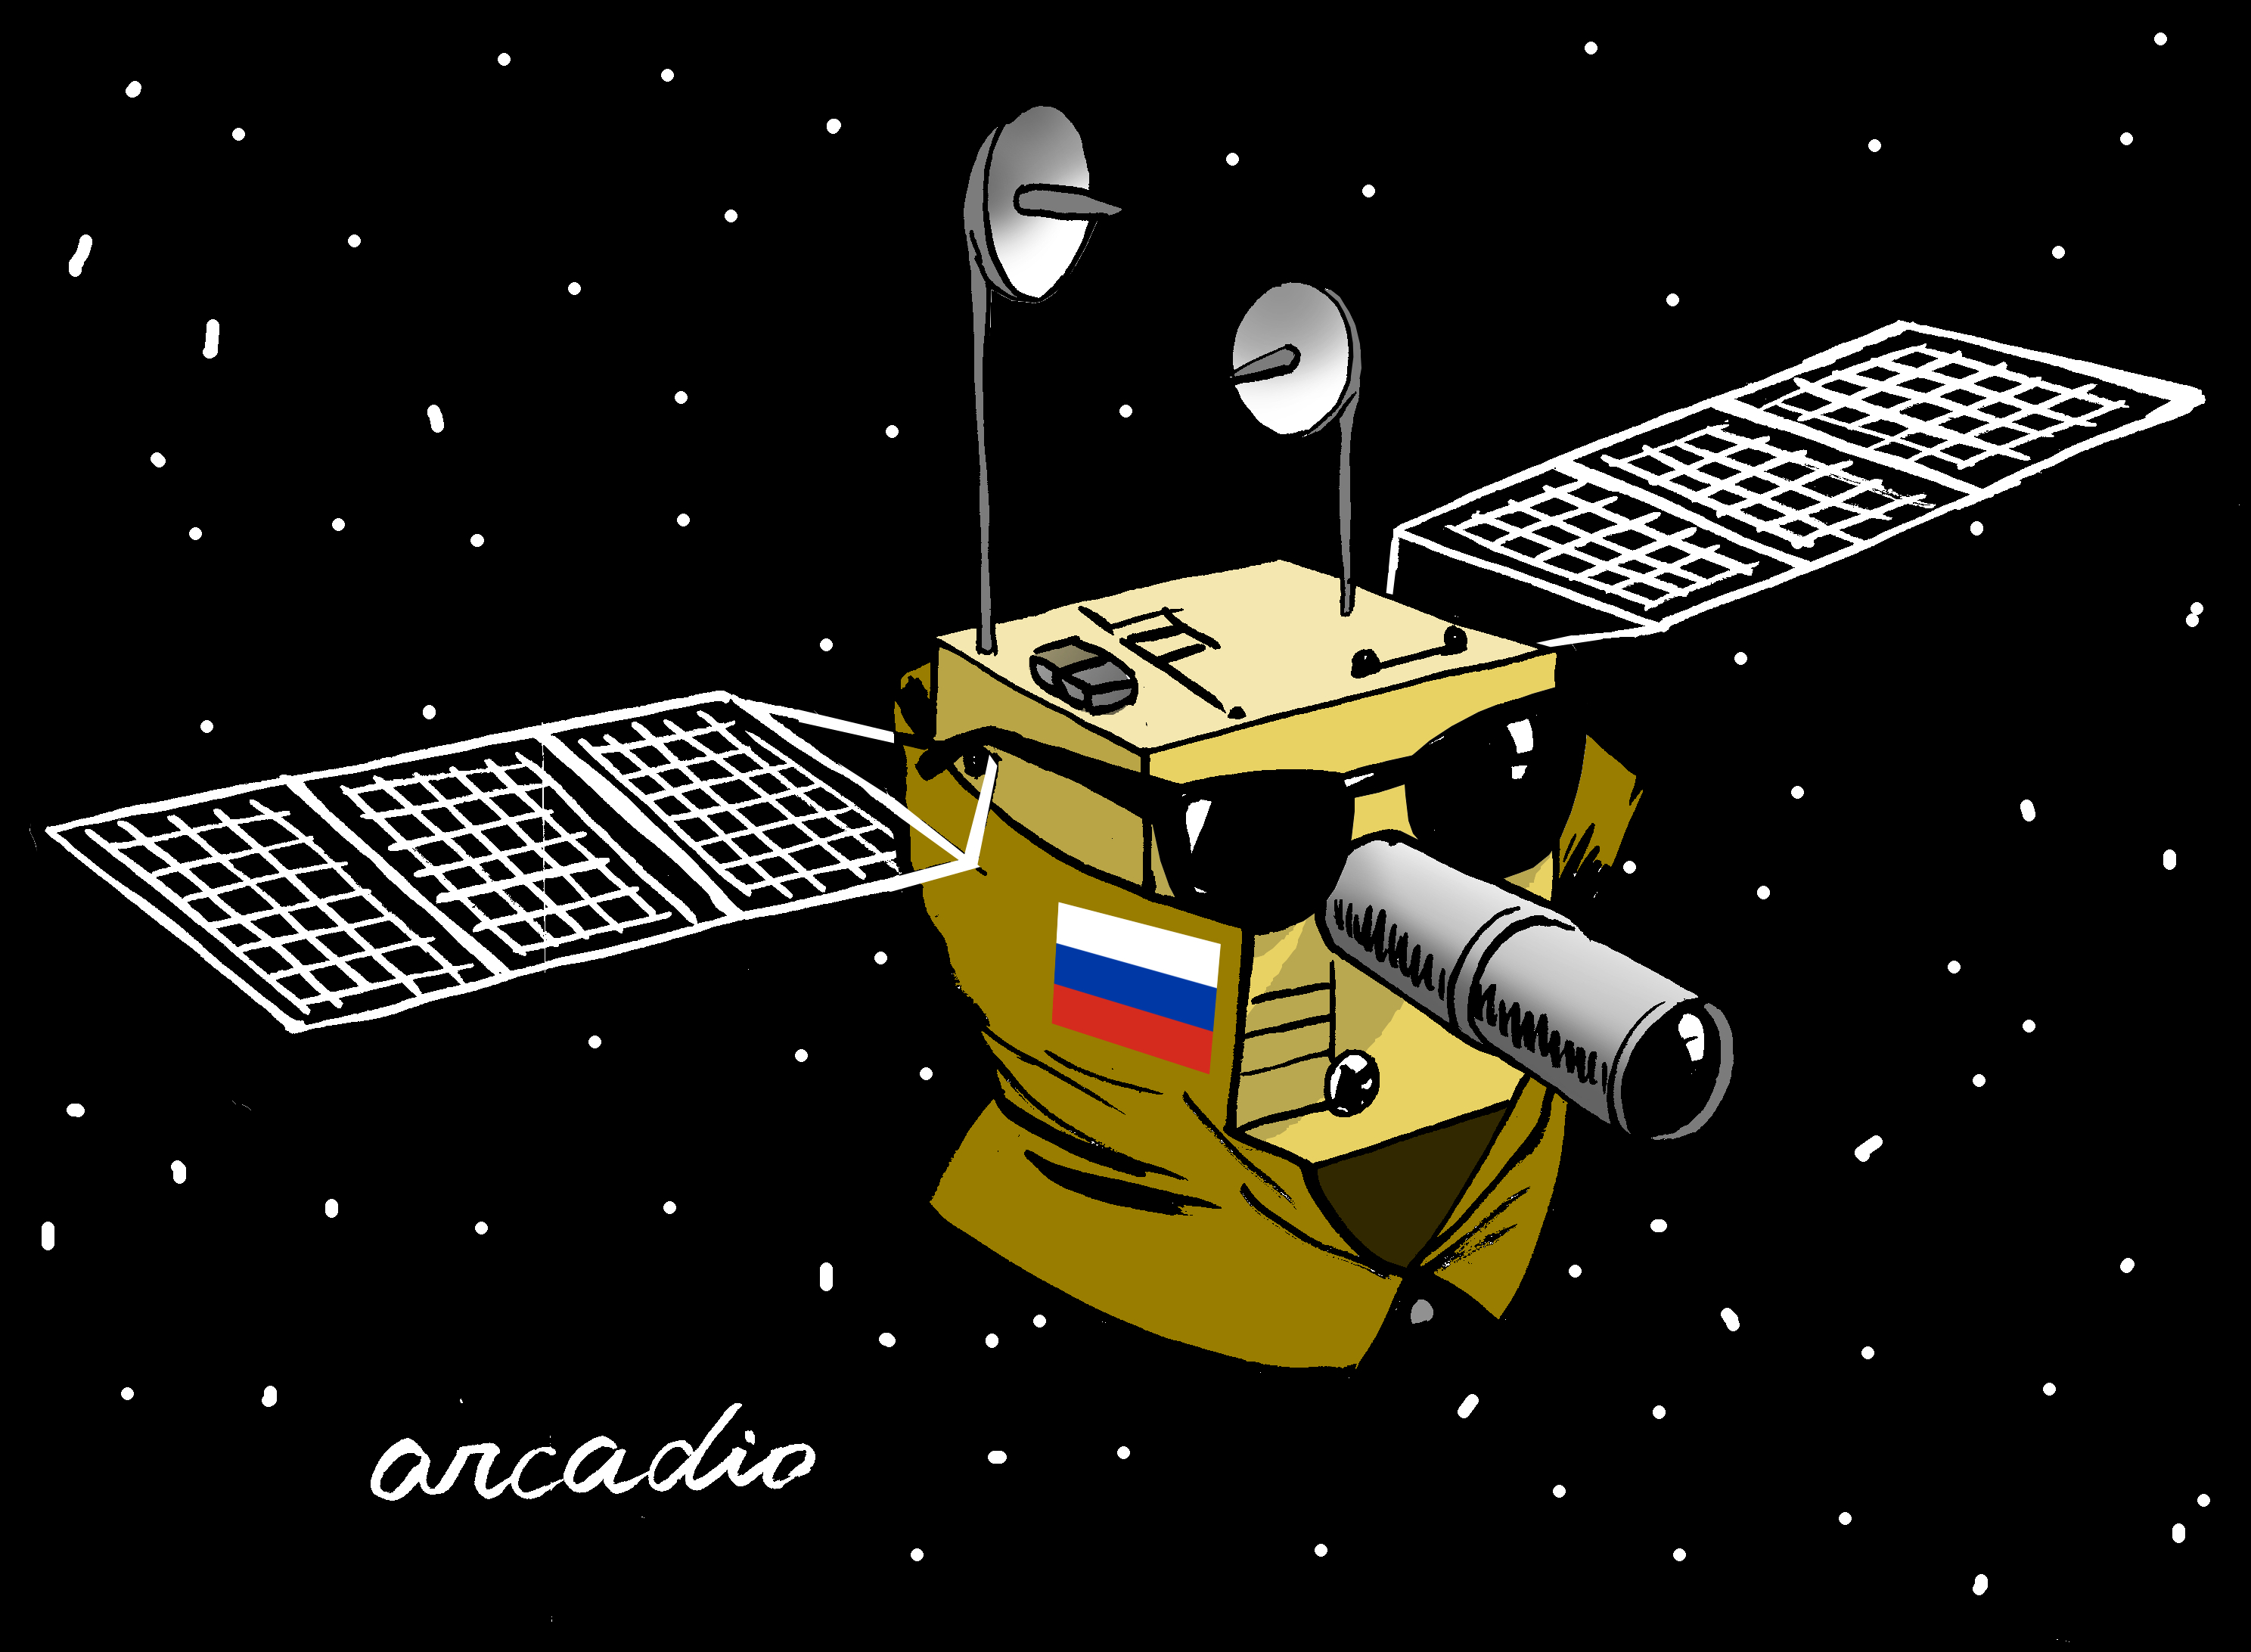 space satellite cartoon